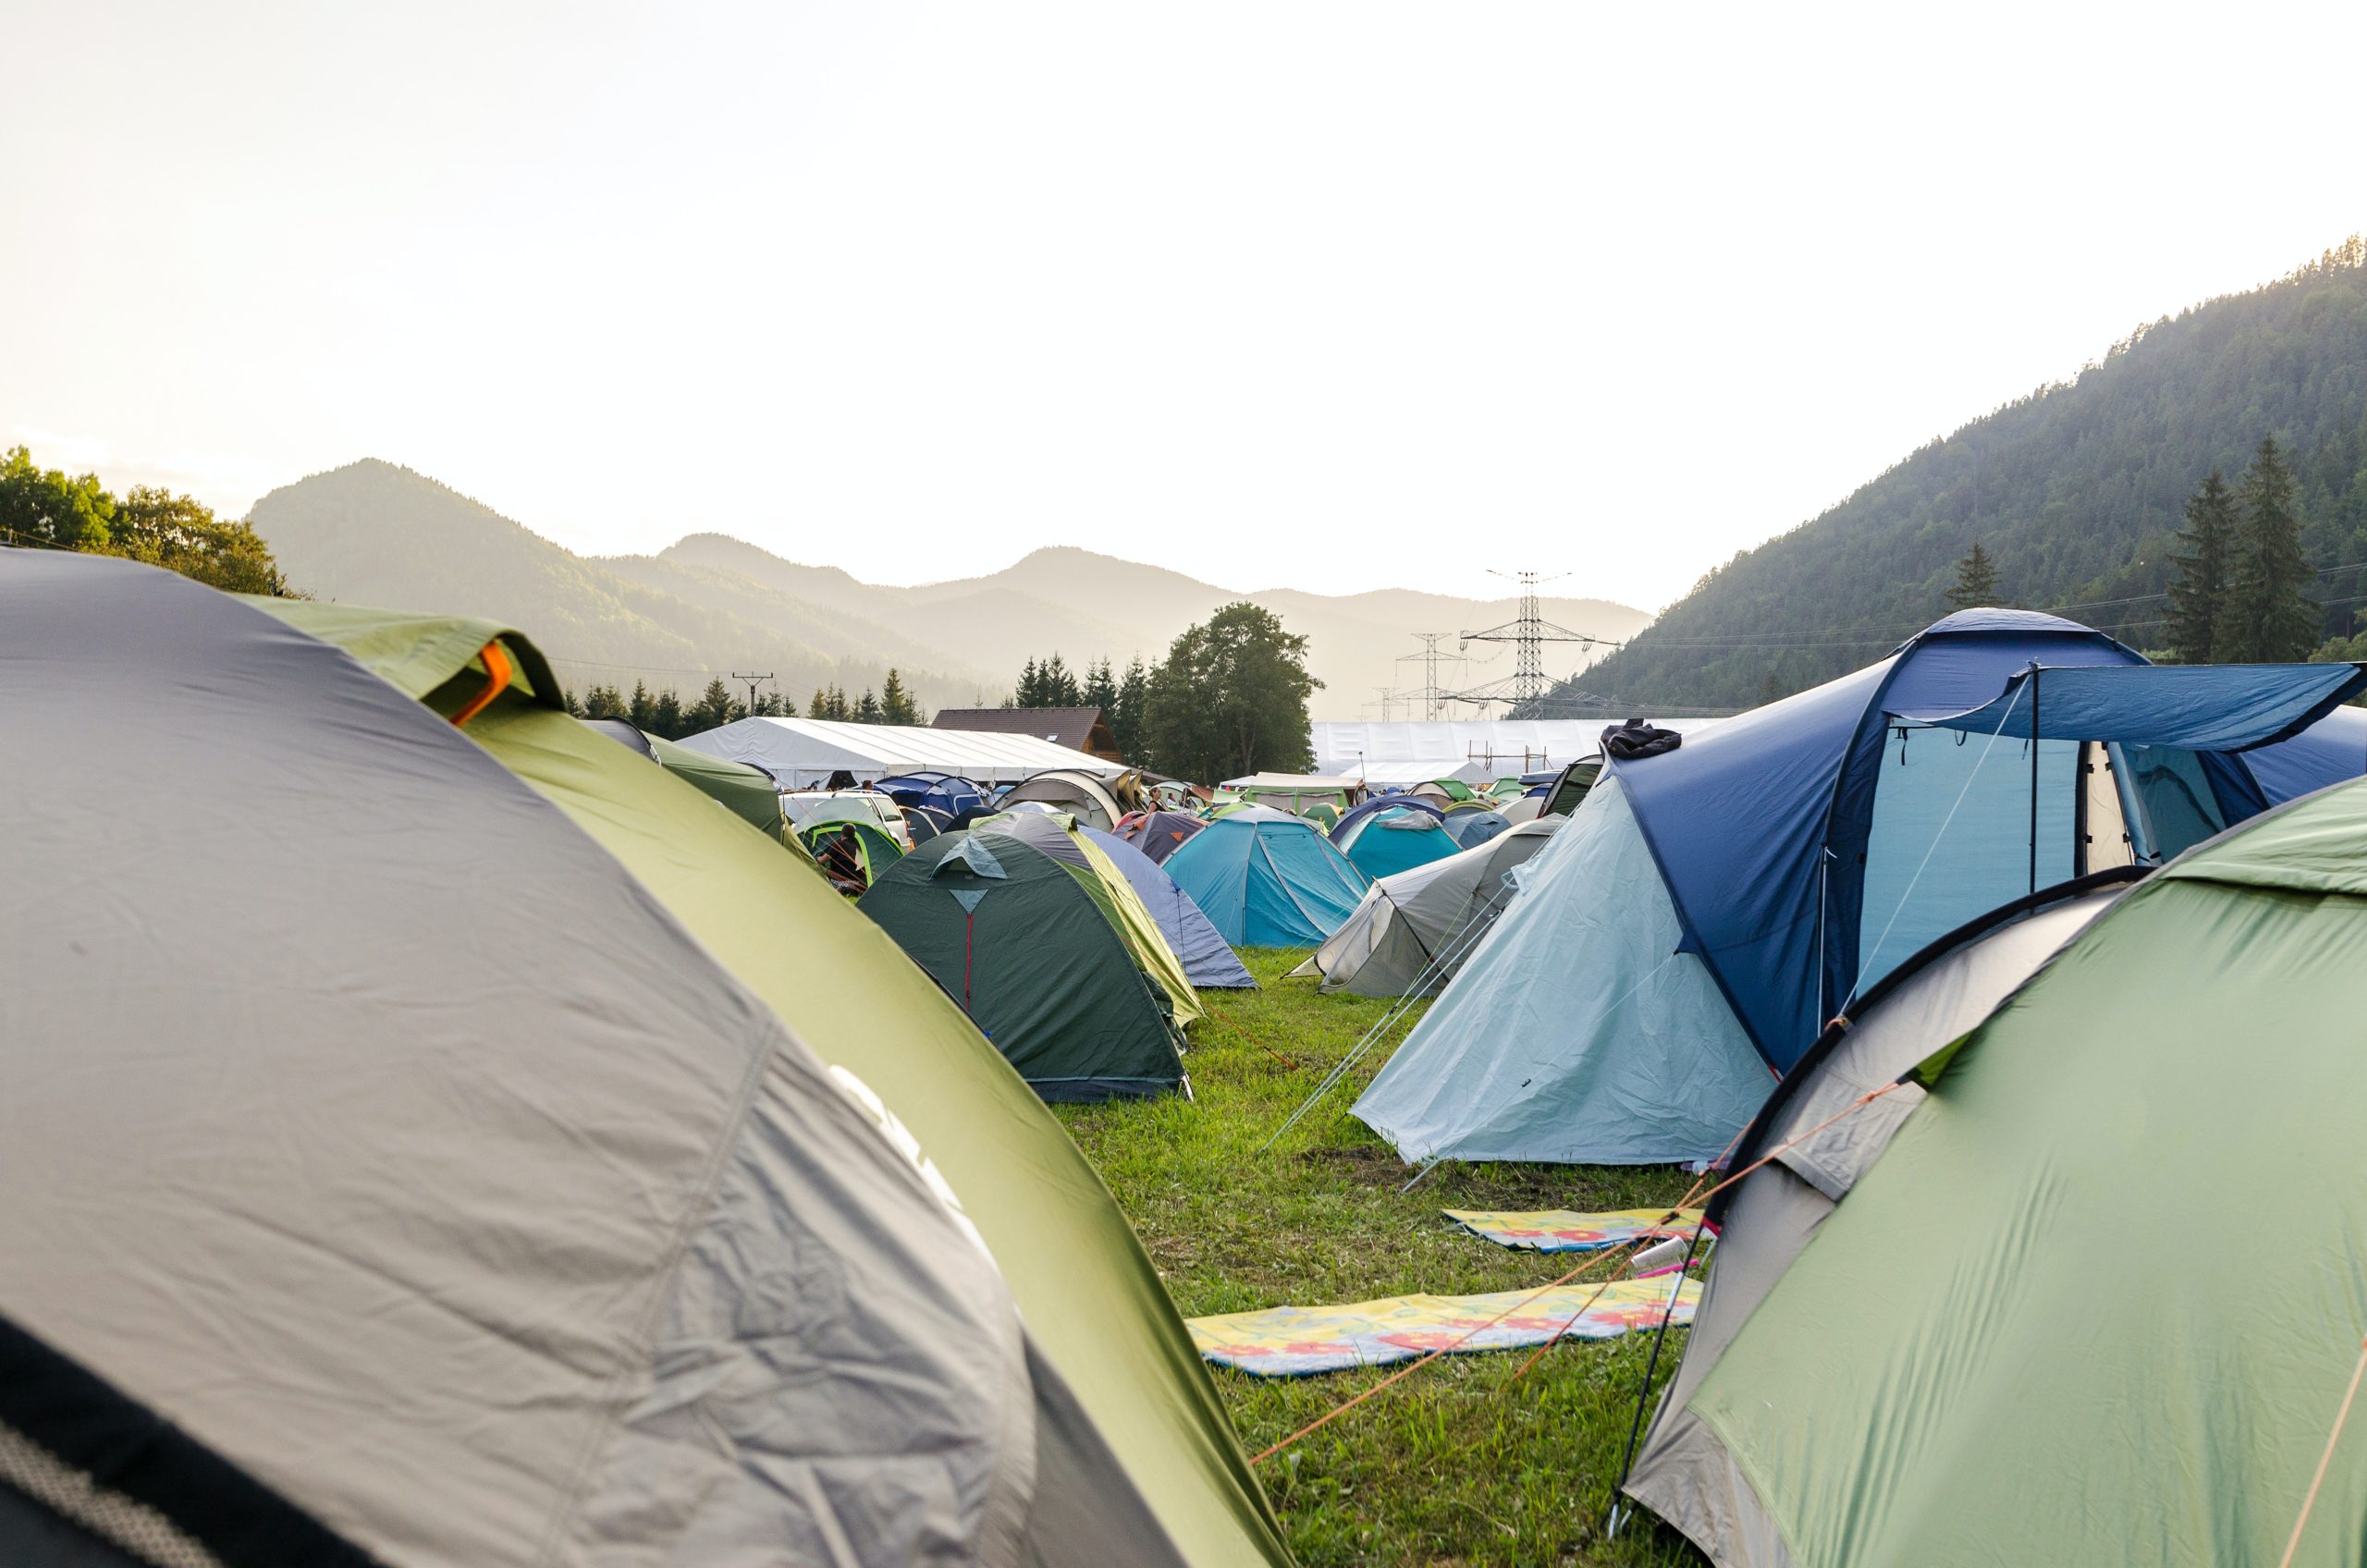 Camping company. Палатка на траве. Кемпинг компания. Ревун палаточный лагерь. Палаточный принт.